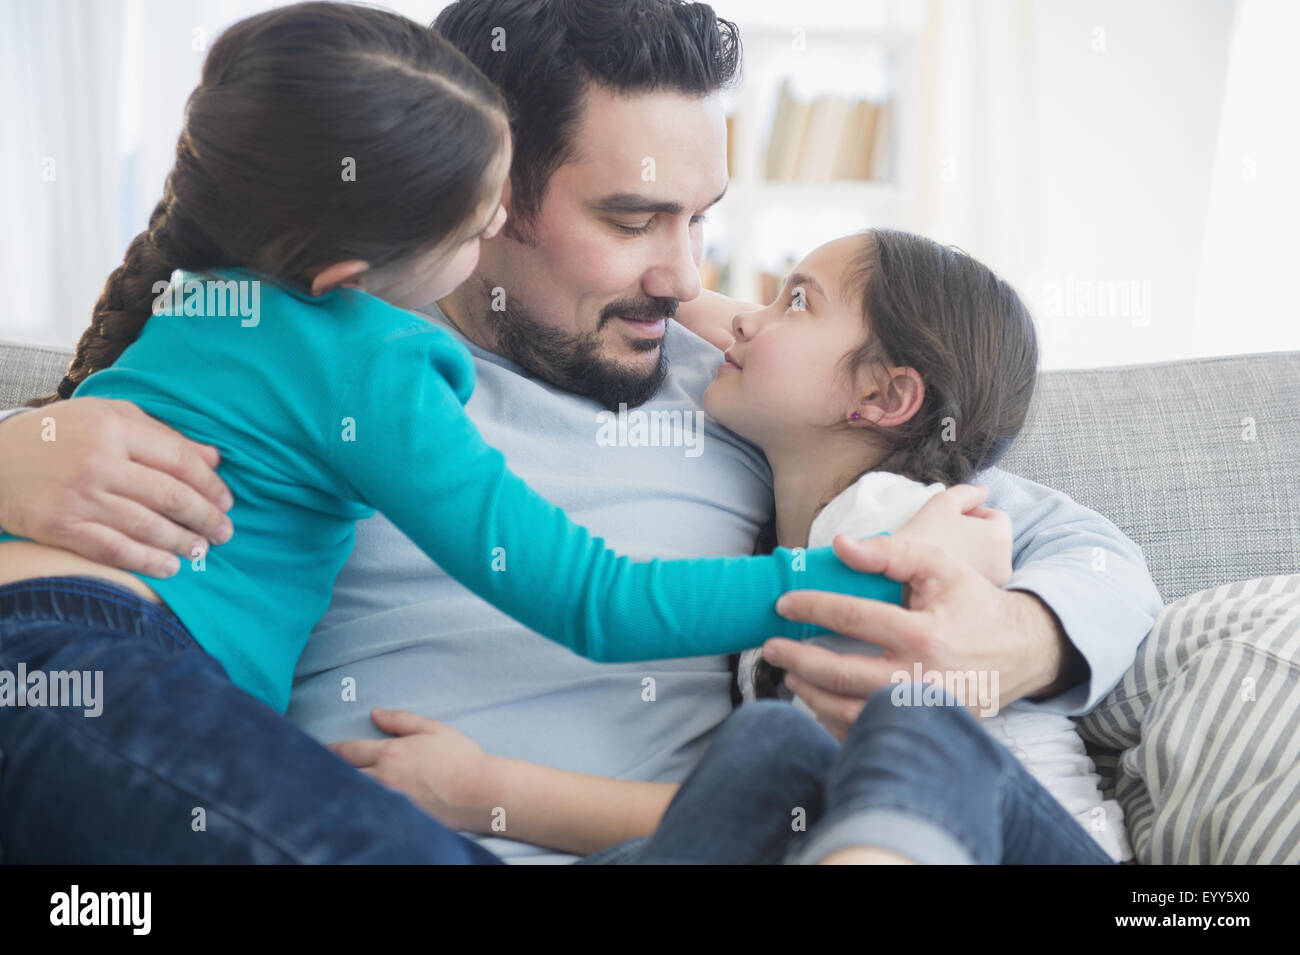 Père et filles caucasiennes hugging on sofa Banque D'Images